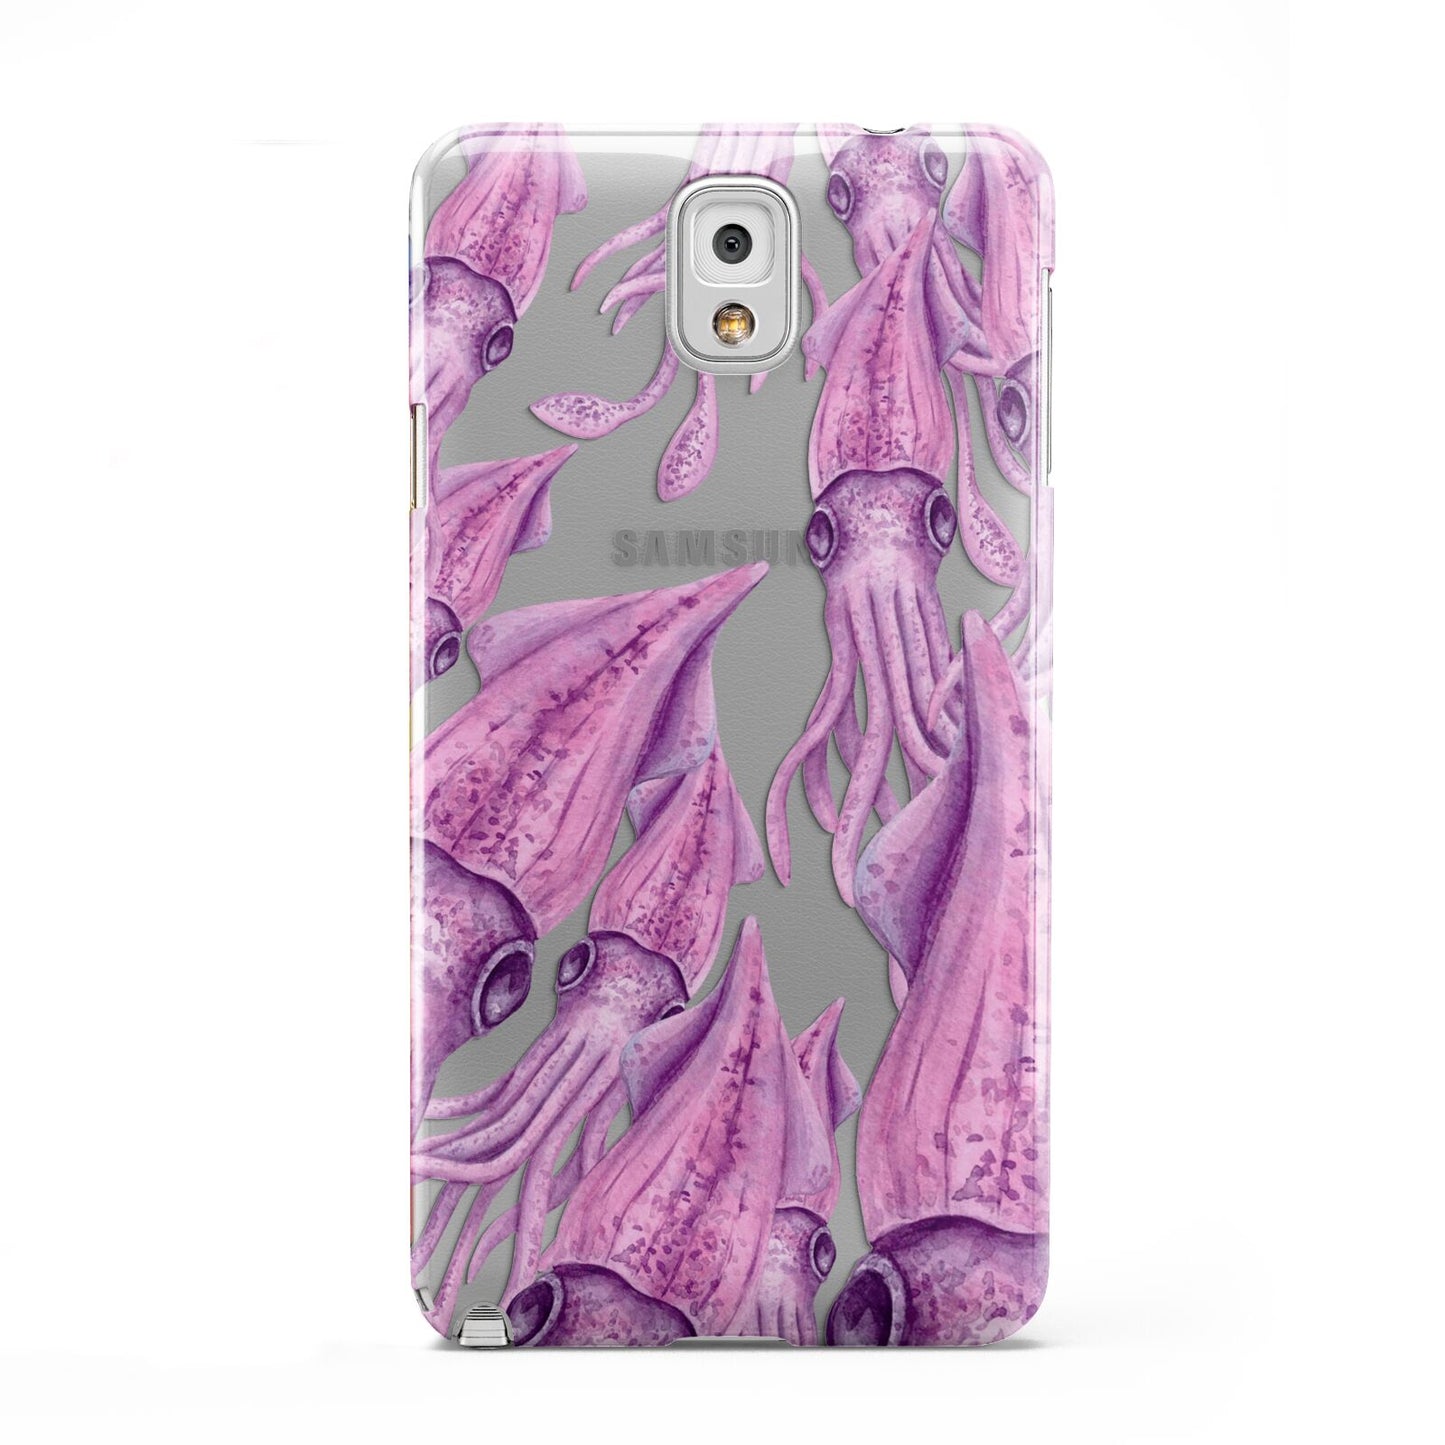 Squid Samsung Galaxy Note 3 Case